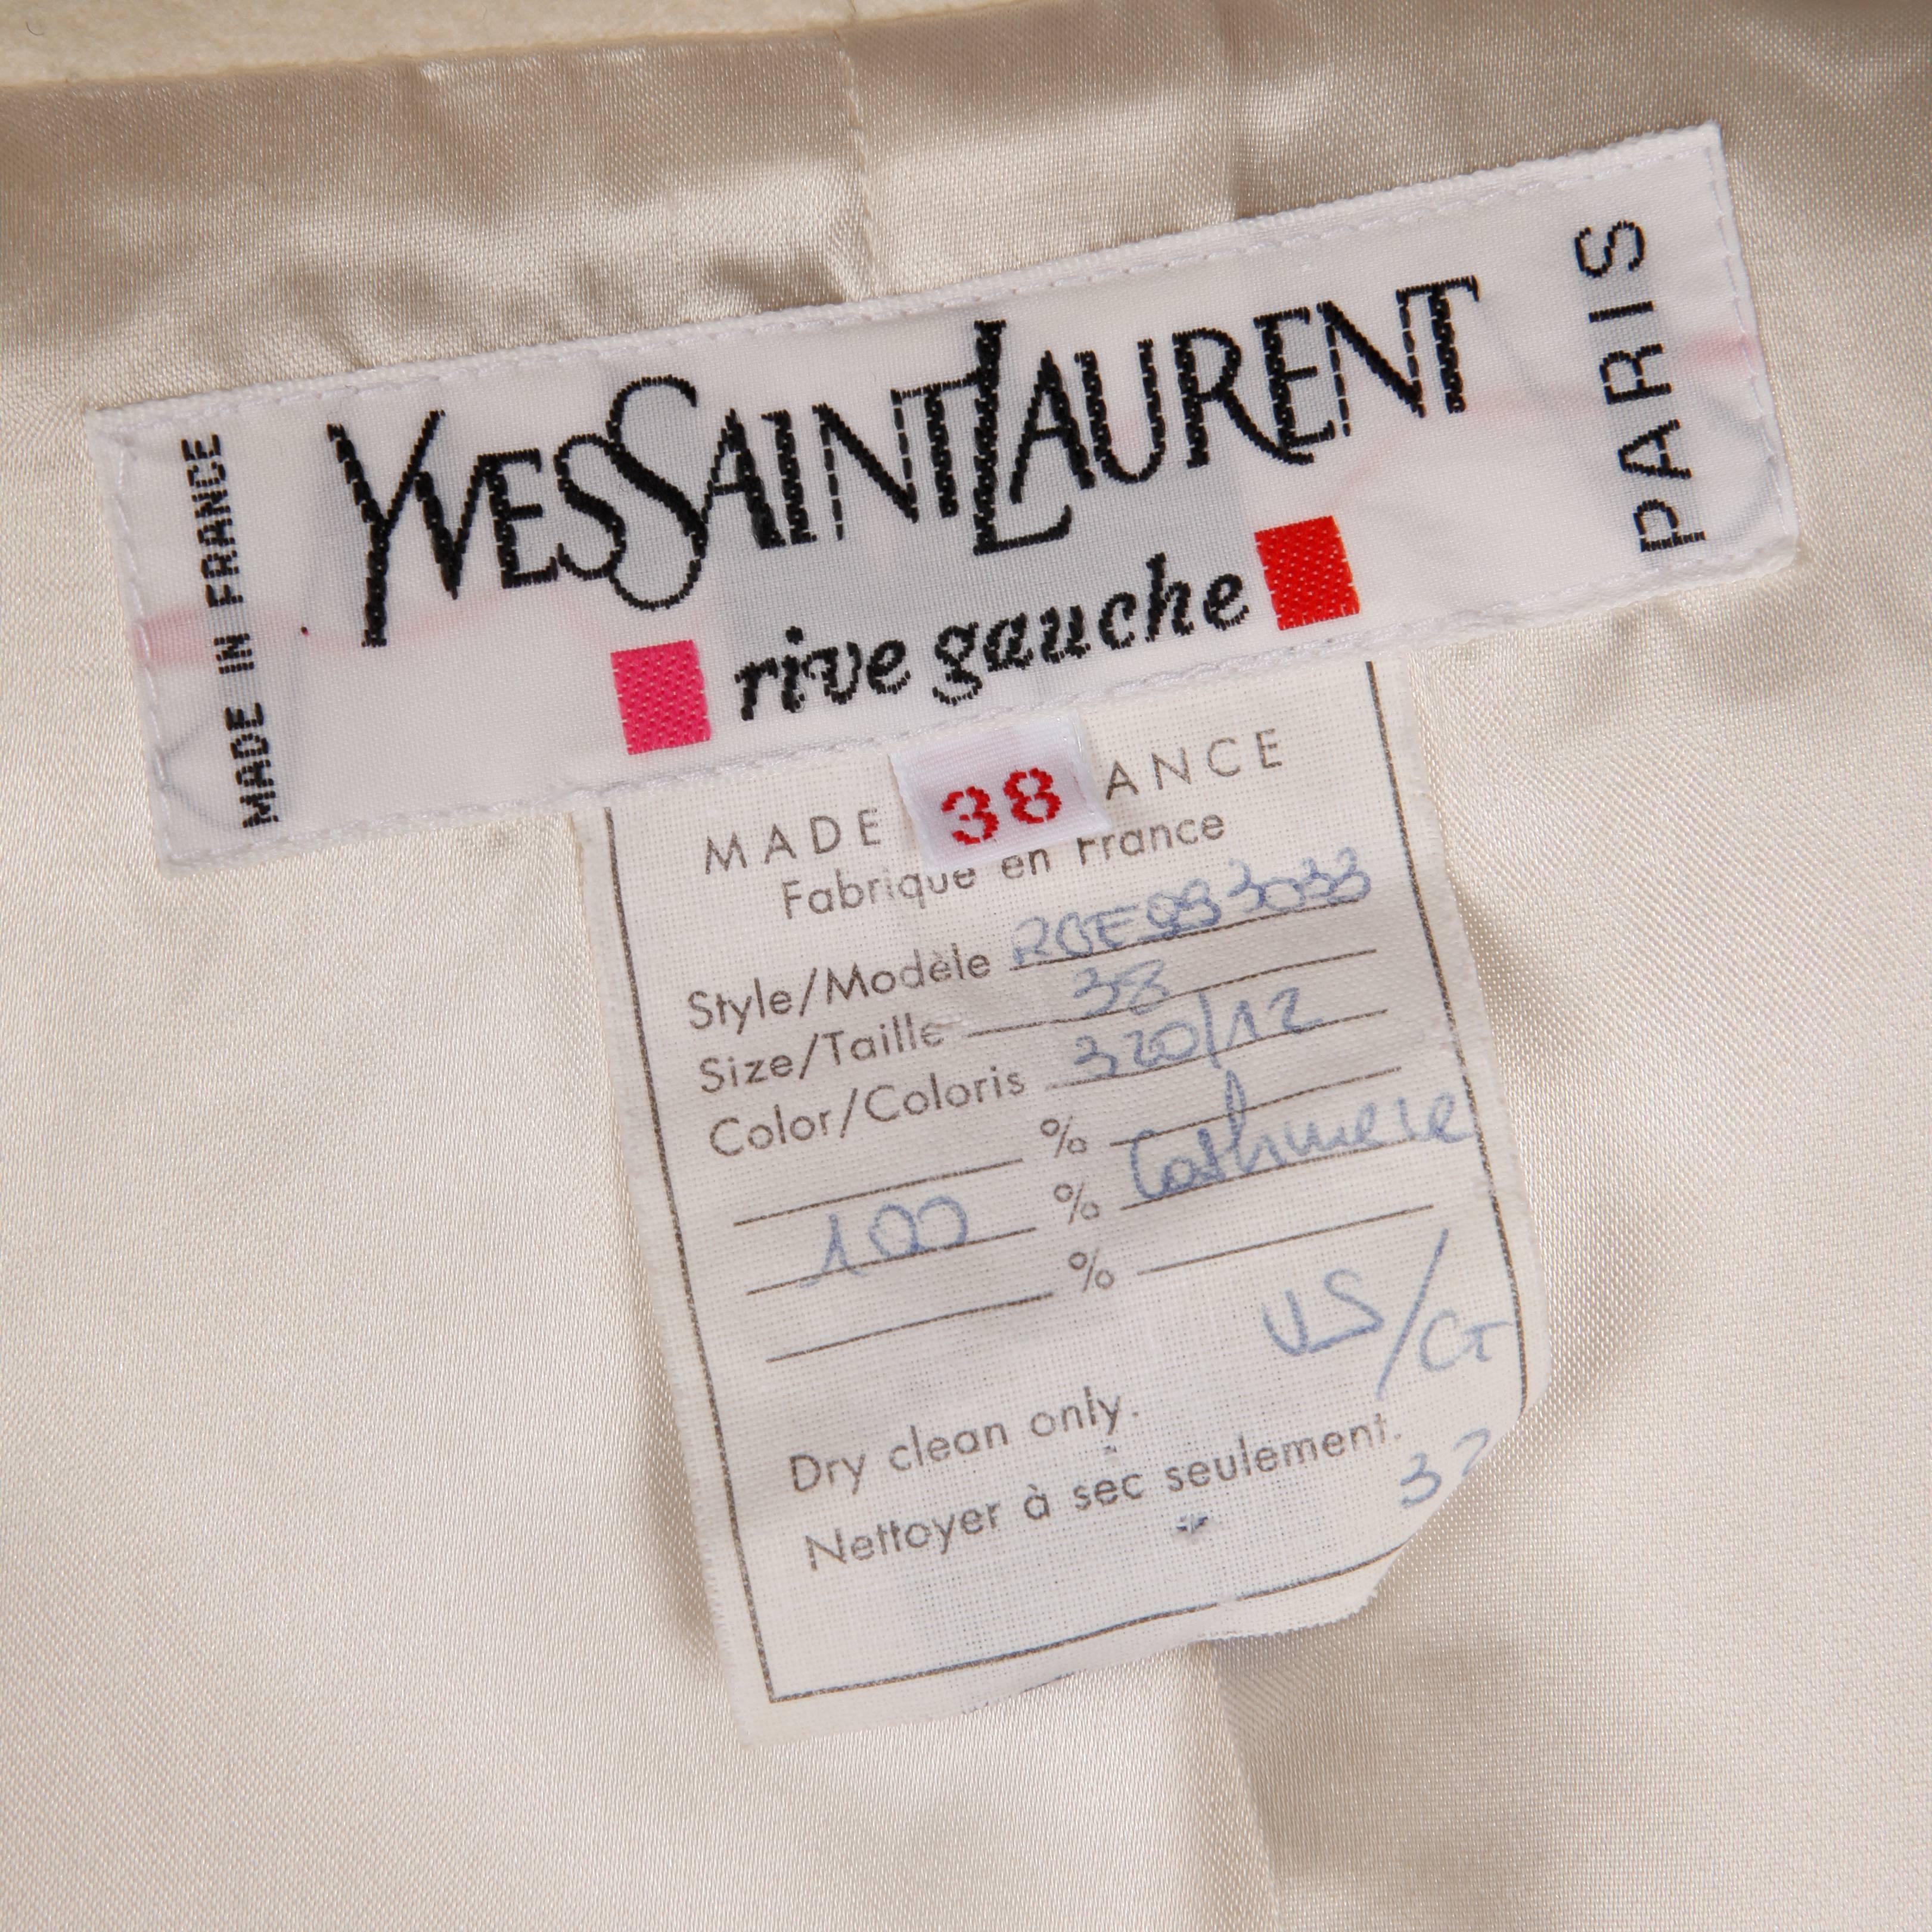 Superbe veste ivoire 100% cachemire d'Yves Saint Laurent. Col structuré et poches frontales plaquées. Entièrement doublé. La taille marquée est 38 et la veste s'adapte comme une taille moderne petite. Le buste mesure 38